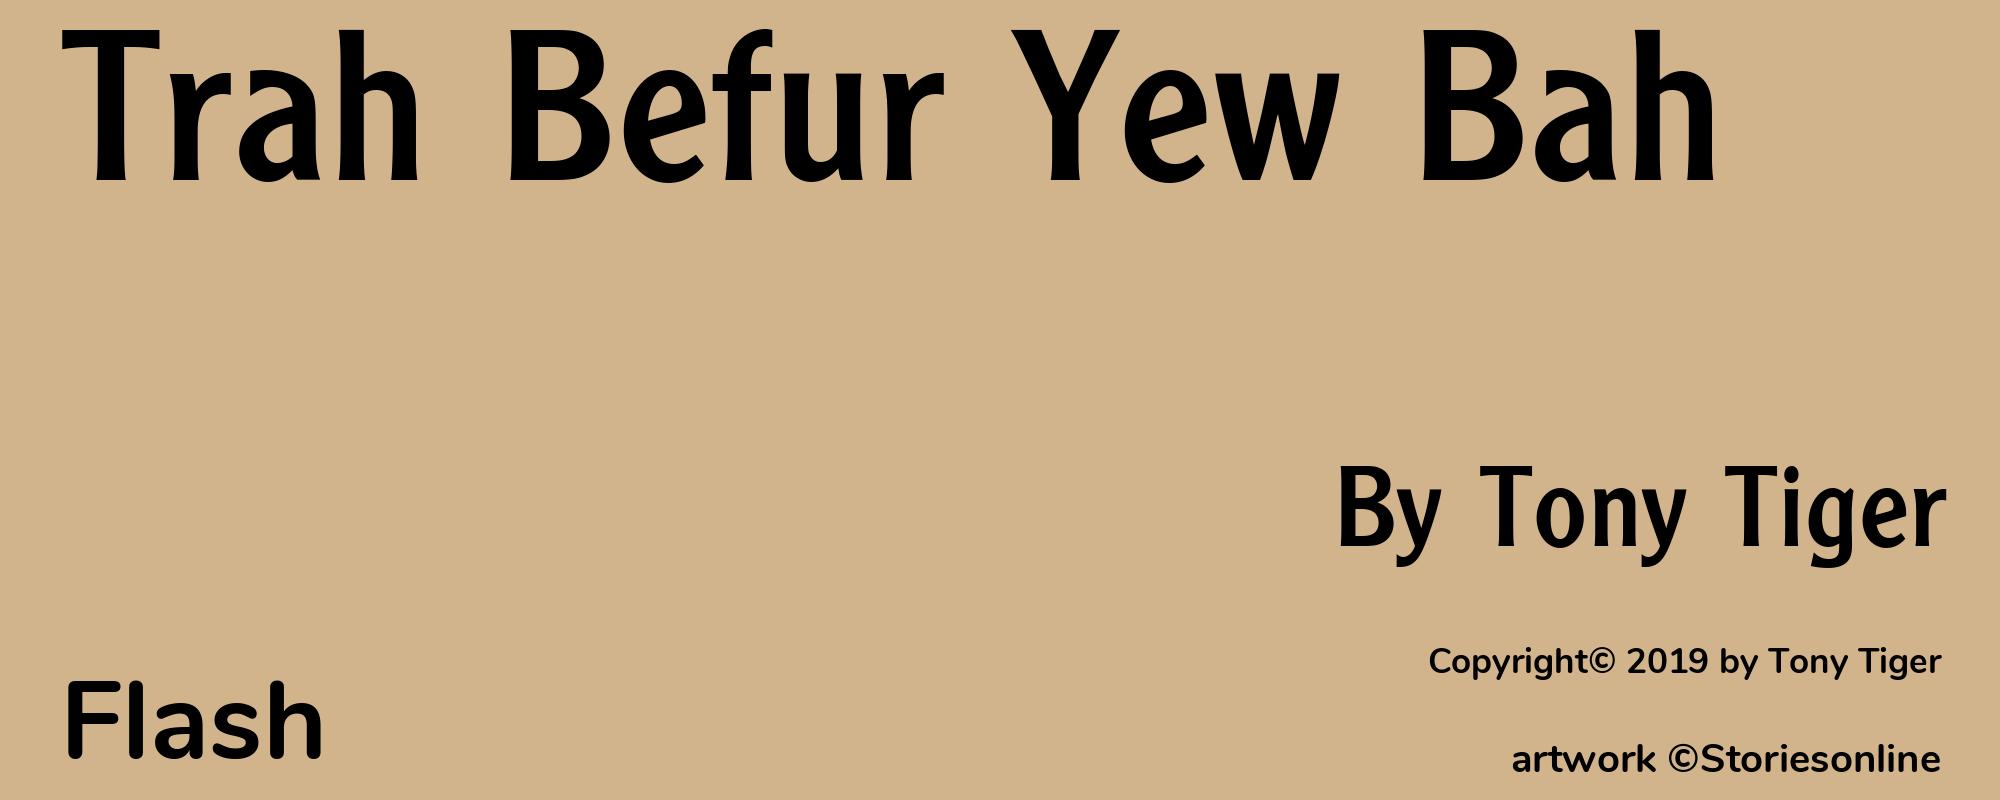 Trah Befur Yew Bah - Cover